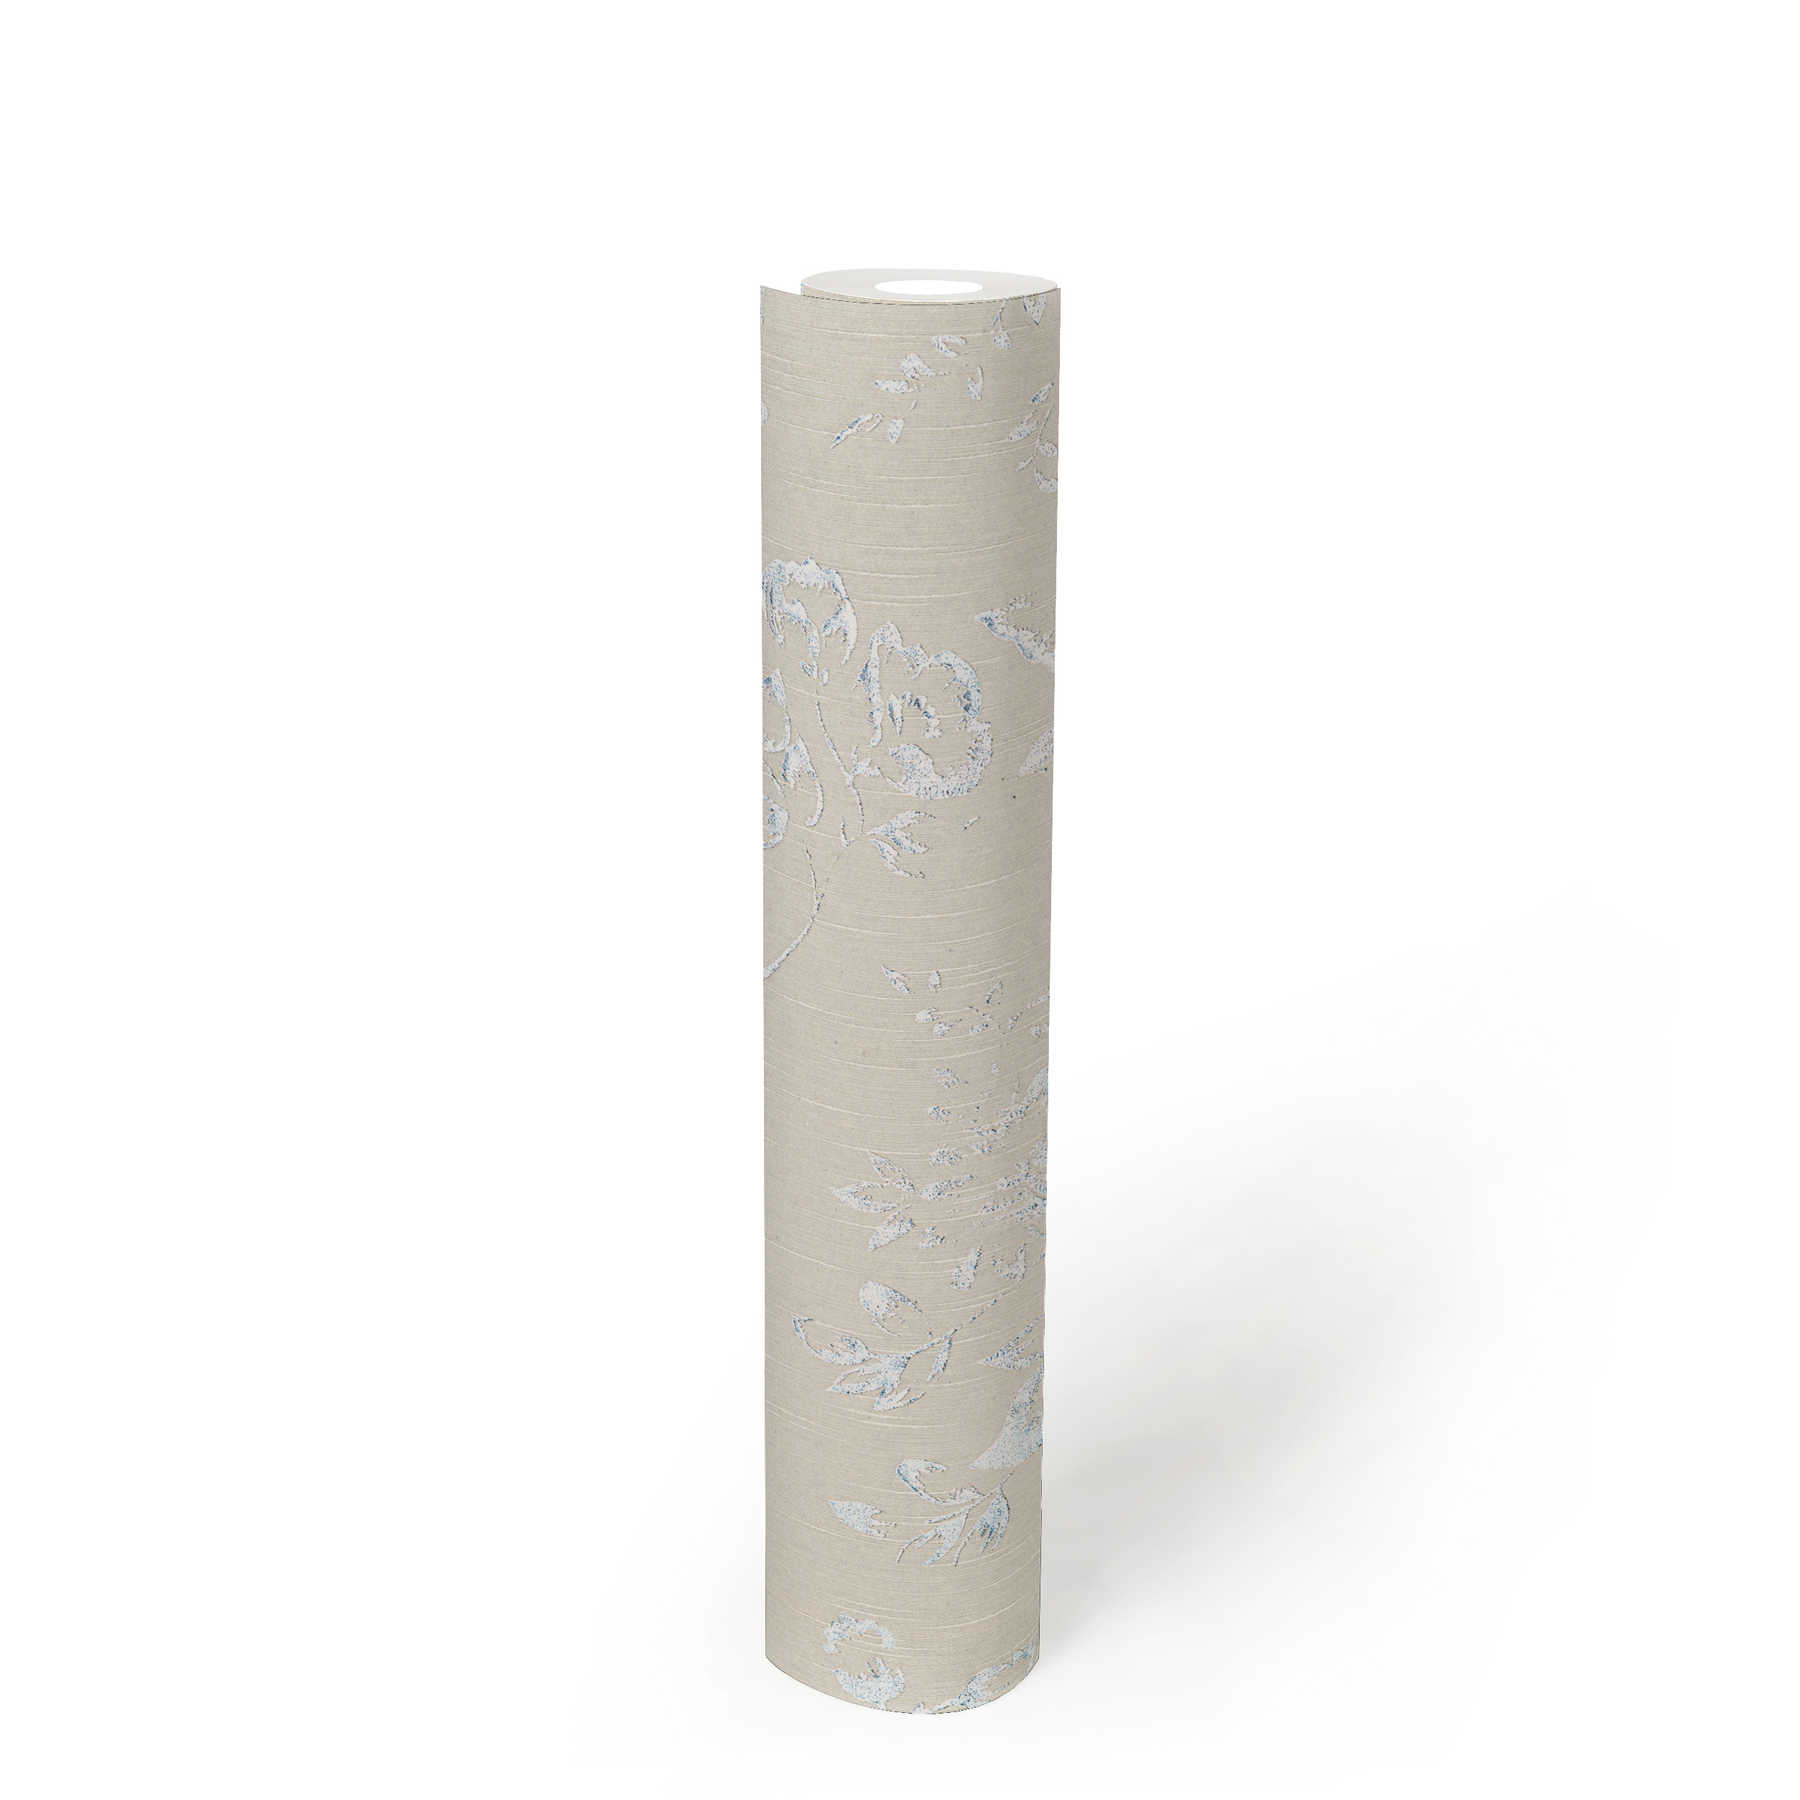             Strukturtapete mit silbernem Blütenmuster – Silber, Grau
        